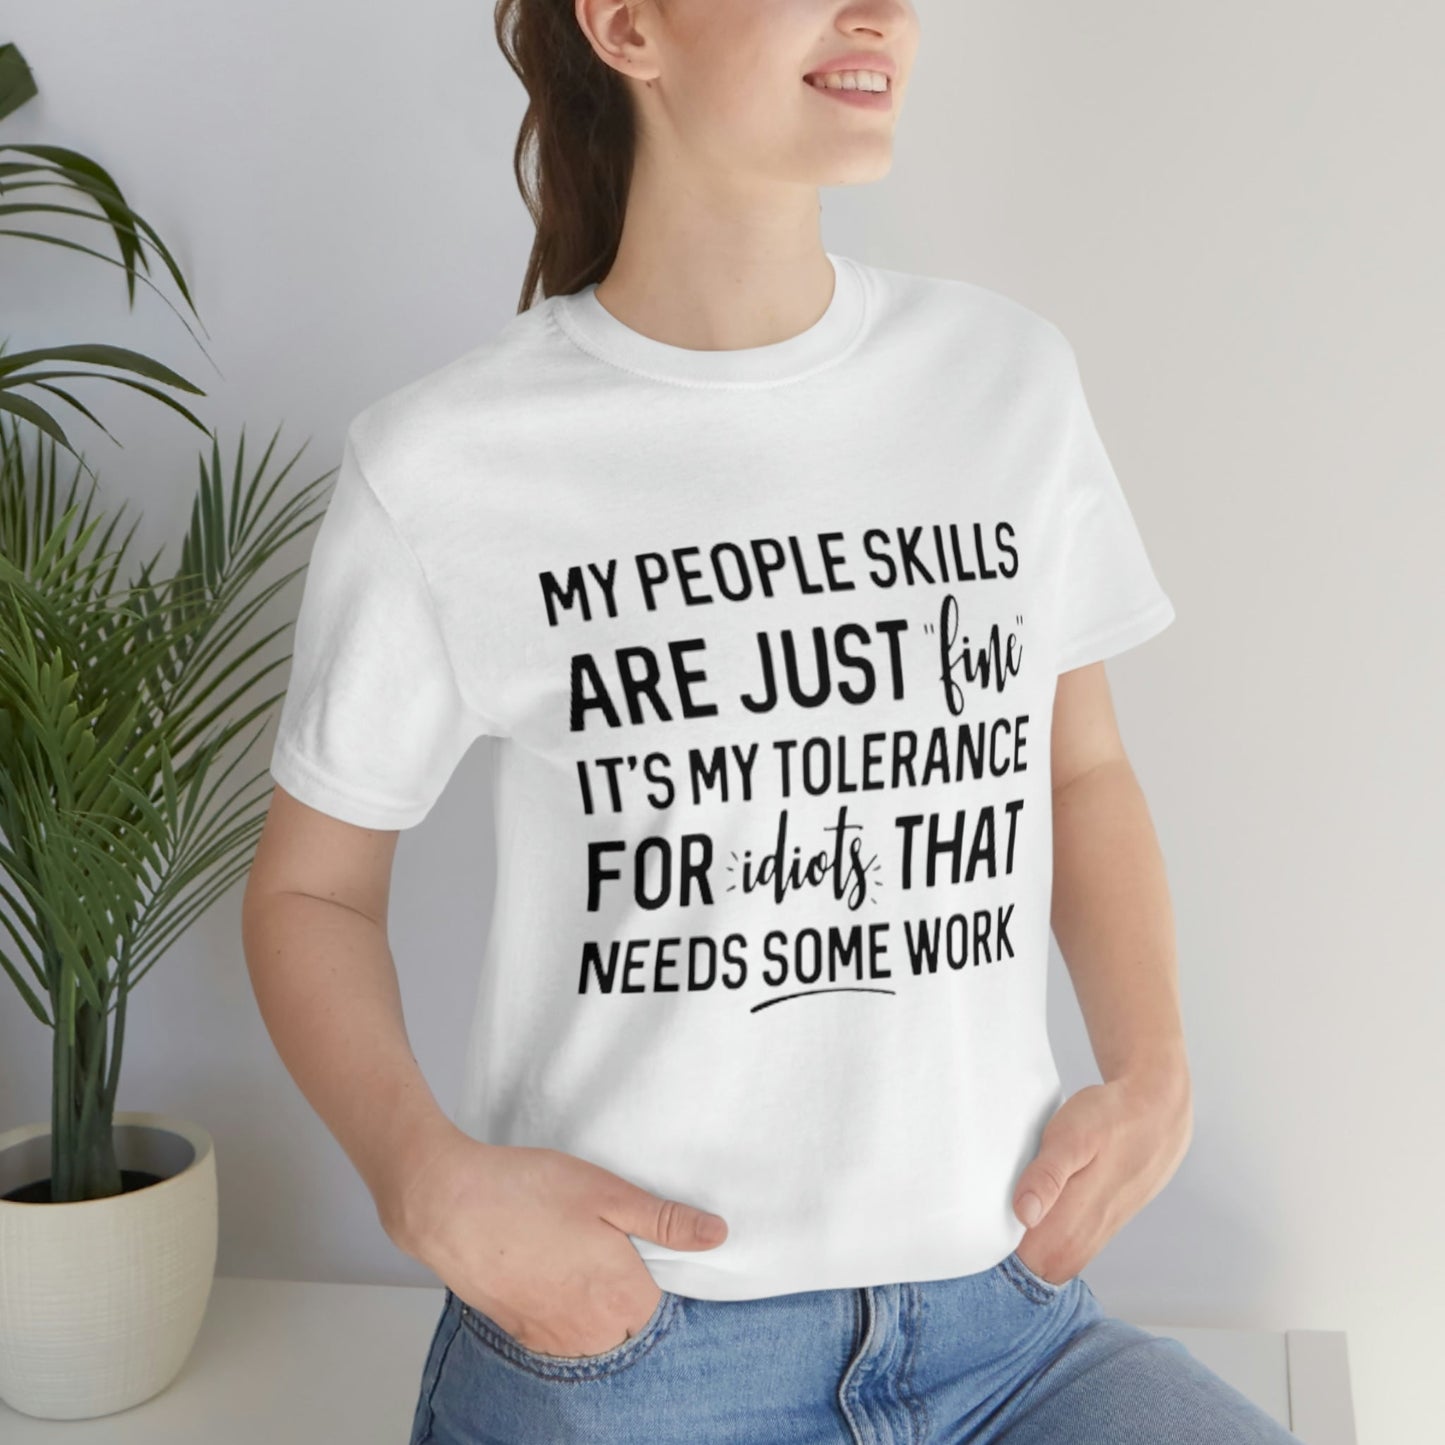 People Skills